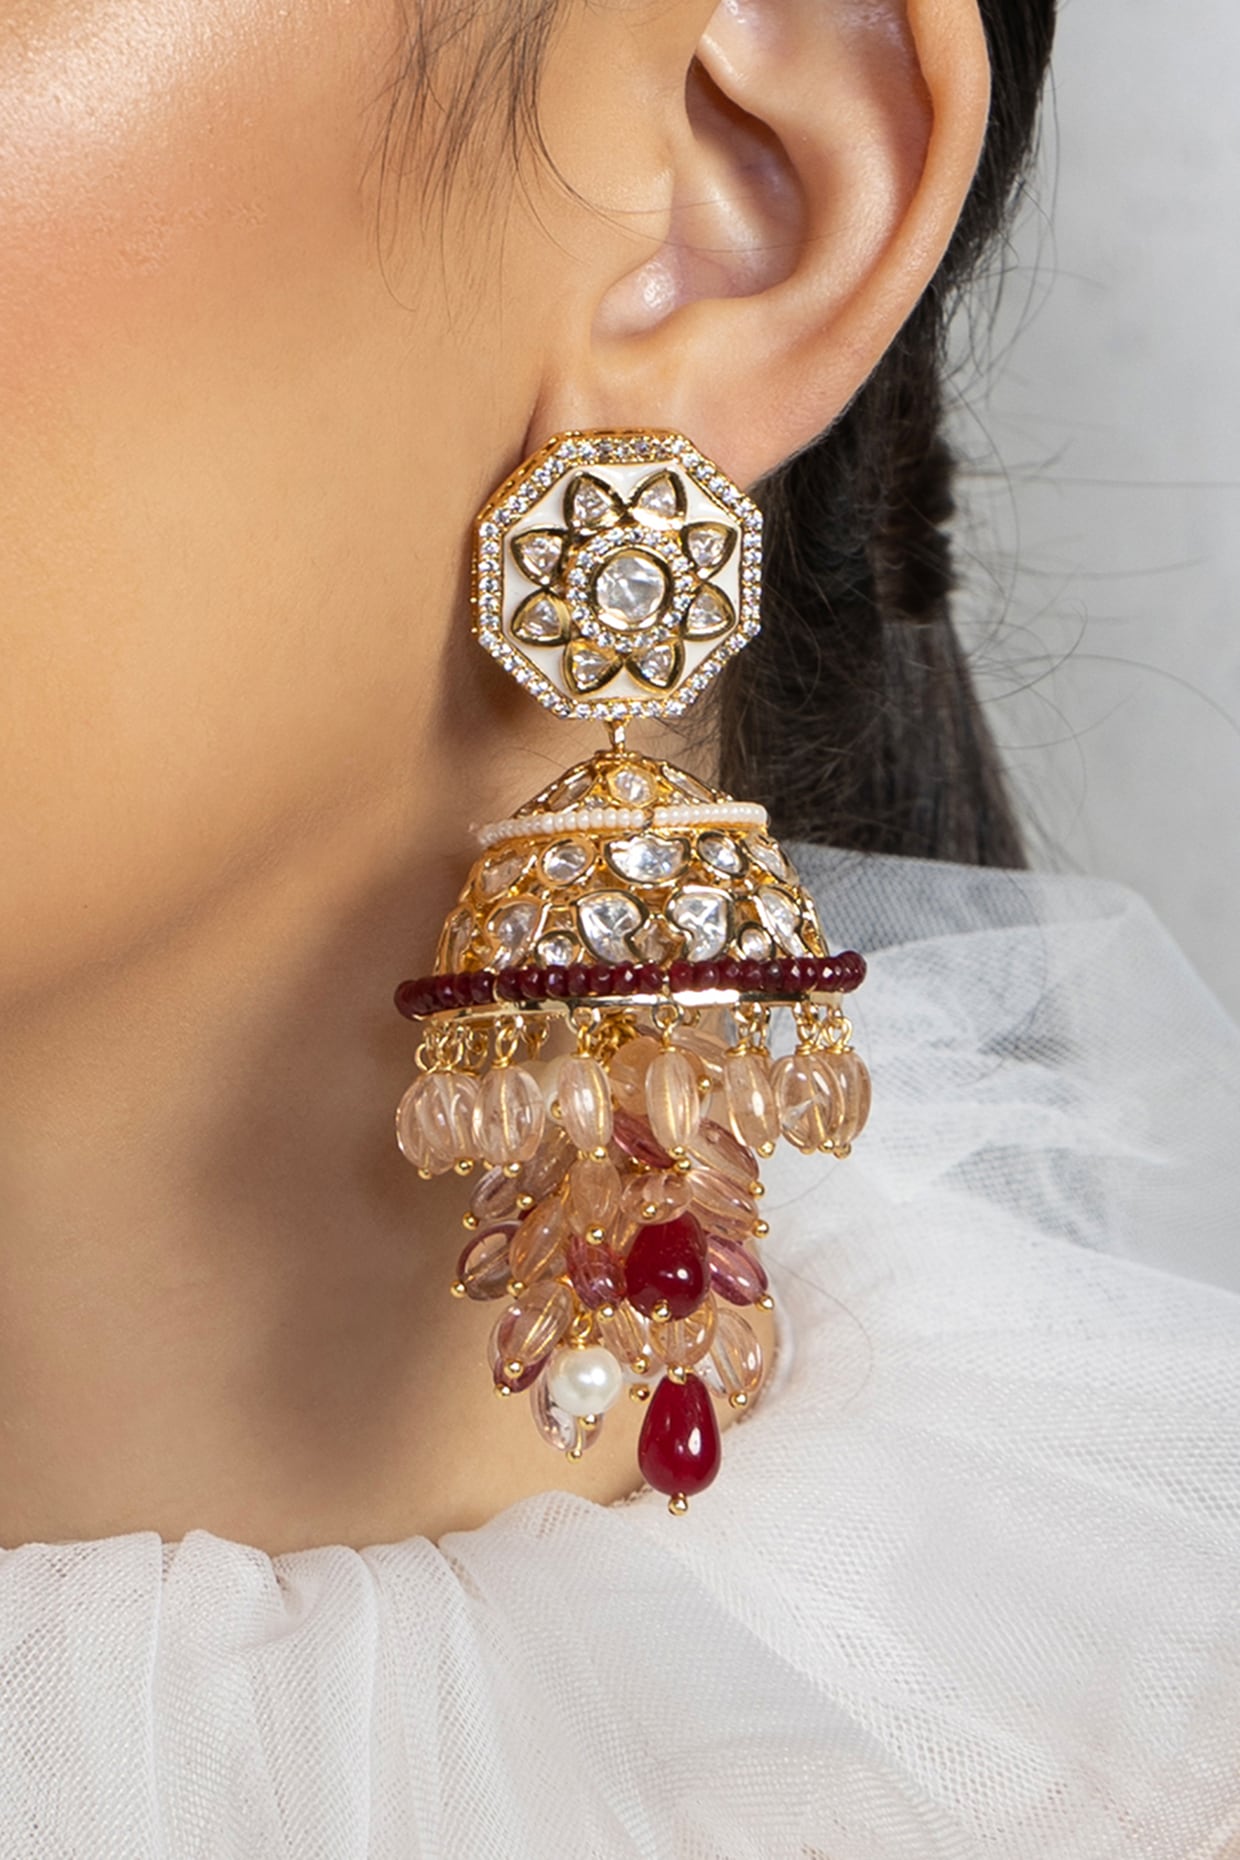 Wholesaler of Beautiful gold jhumka earrings | Jewelxy - 221999